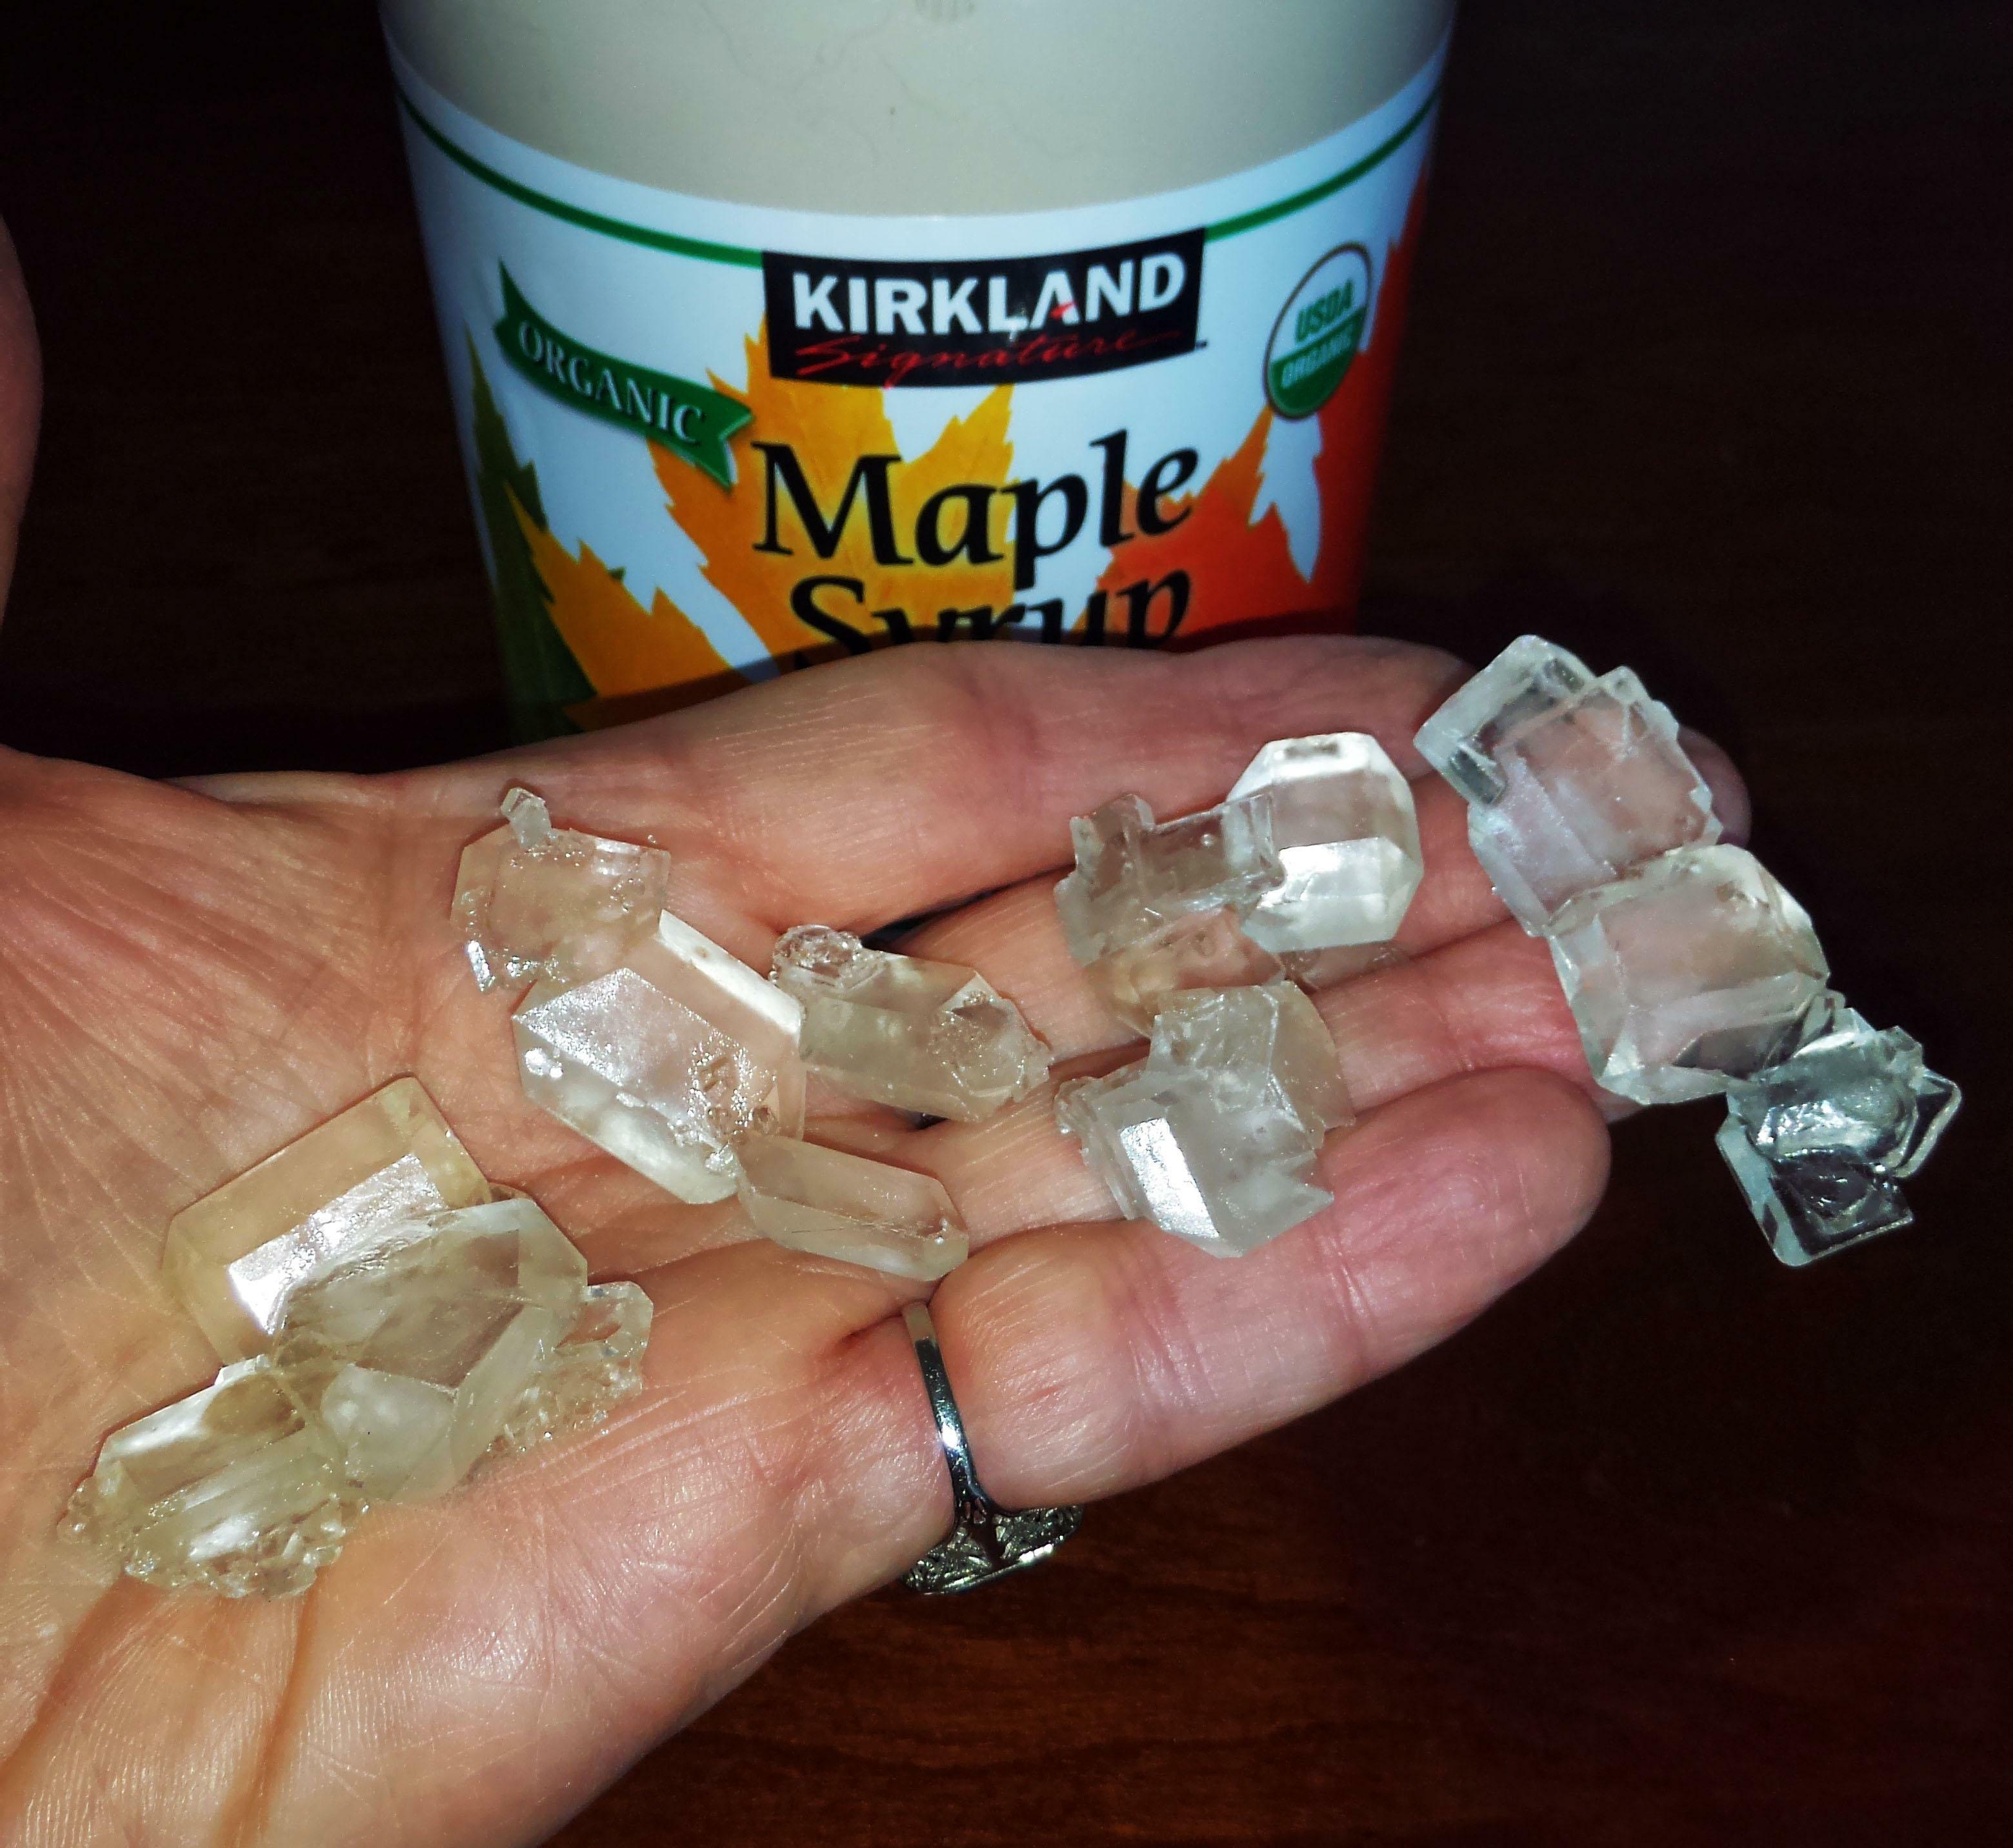 J'ai trouvé ces cristaux au fond d'une bouteille de sirop d'érable qui est restée au fond de mon réfrigérateur pendant quelques années.